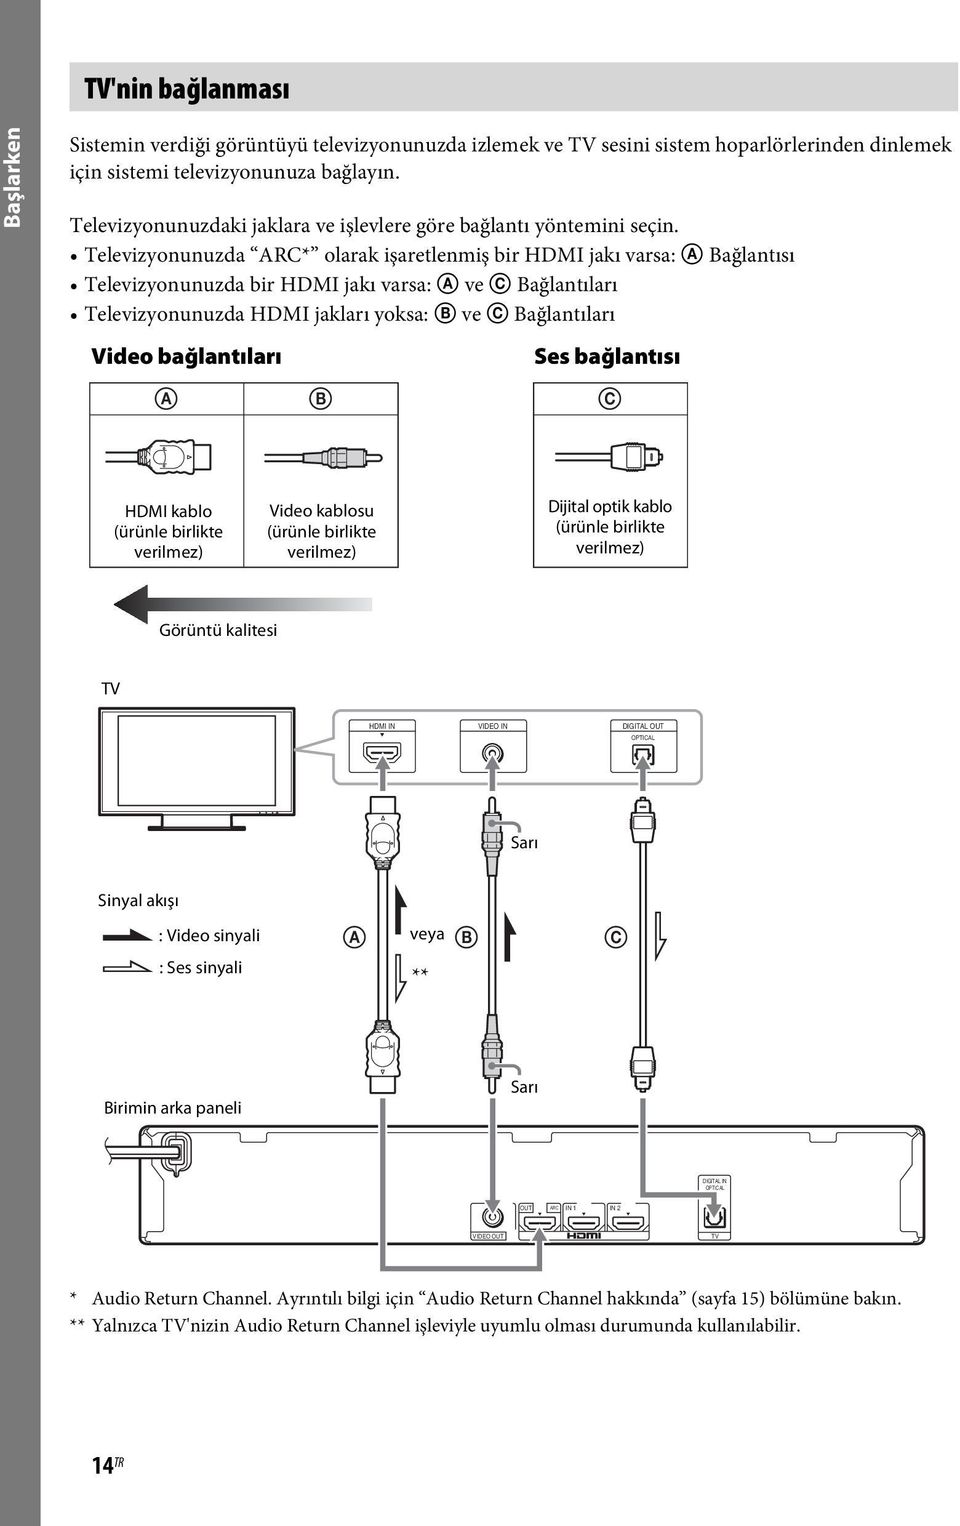 Televizyonunuzda ARC* olarak işaretlenmiş bir HDMI jakı varsa: A Bağlantısı Televizyonunuzda bir HDMI jakı varsa: A ve C Bağlantıları Televizyonunuzda HDMI jakları yoksa: B ve C Bağlantıları Video